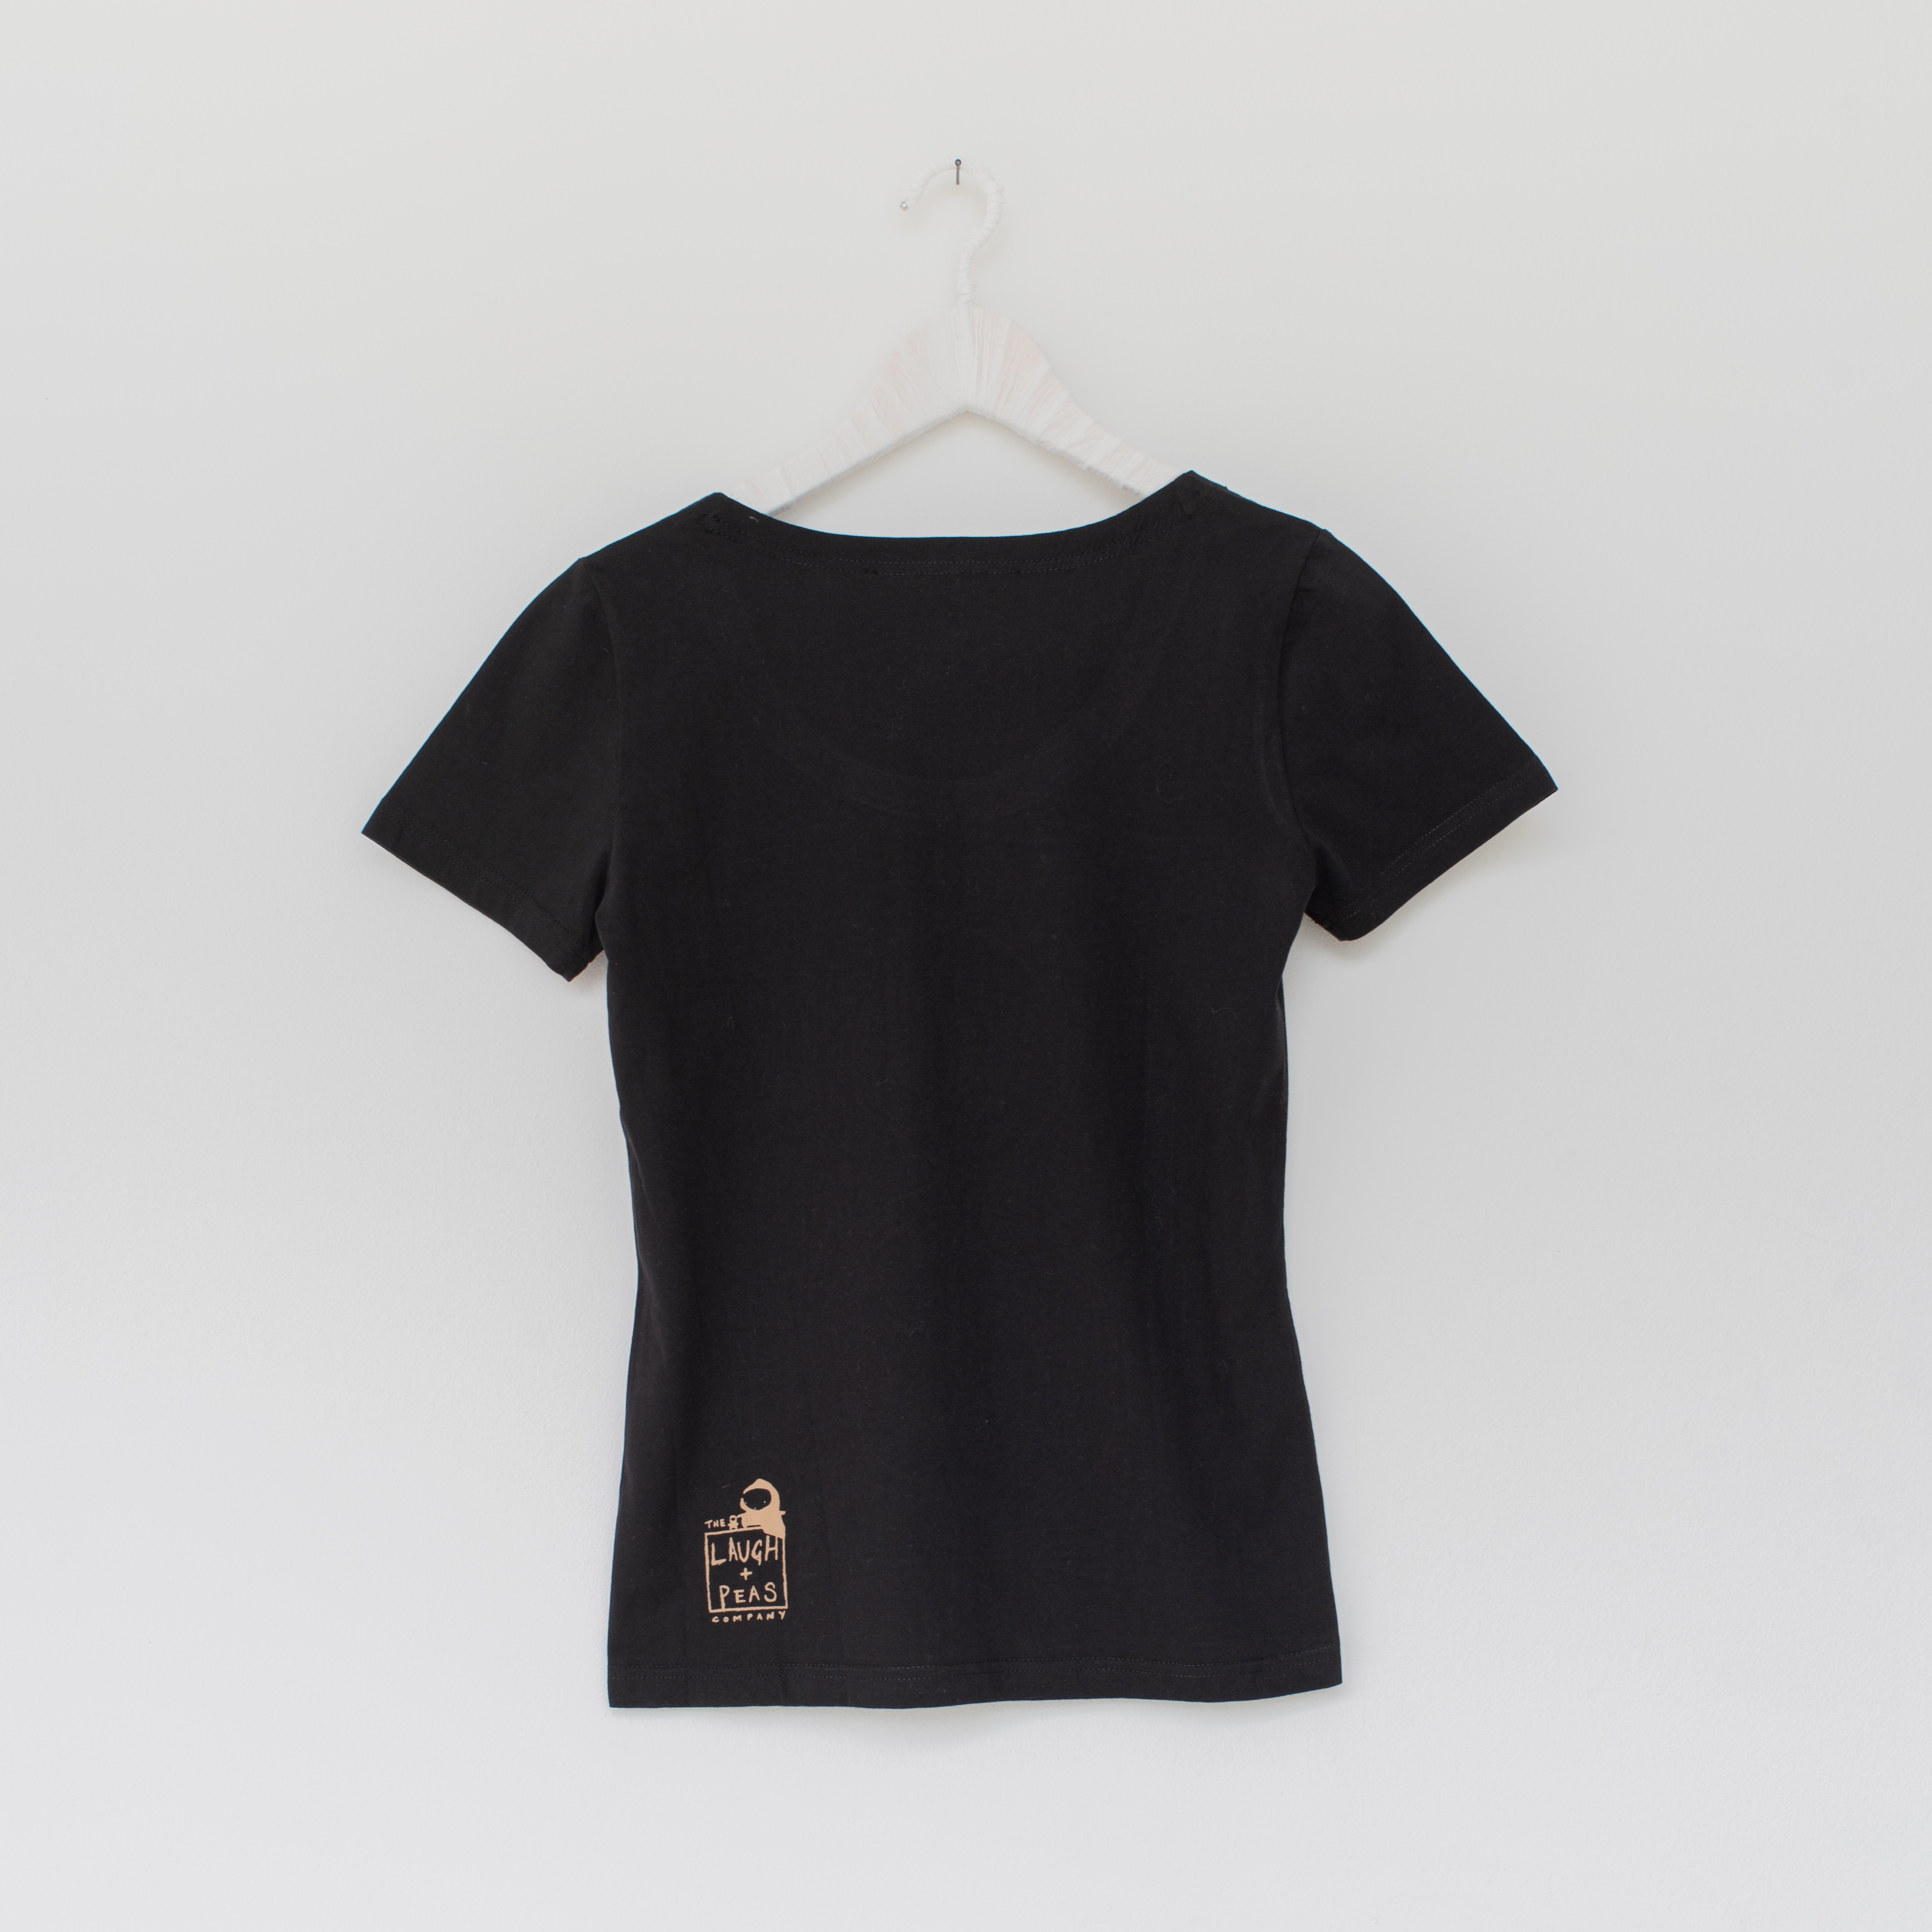 Frauen Shirt CASSETTE, schwarz